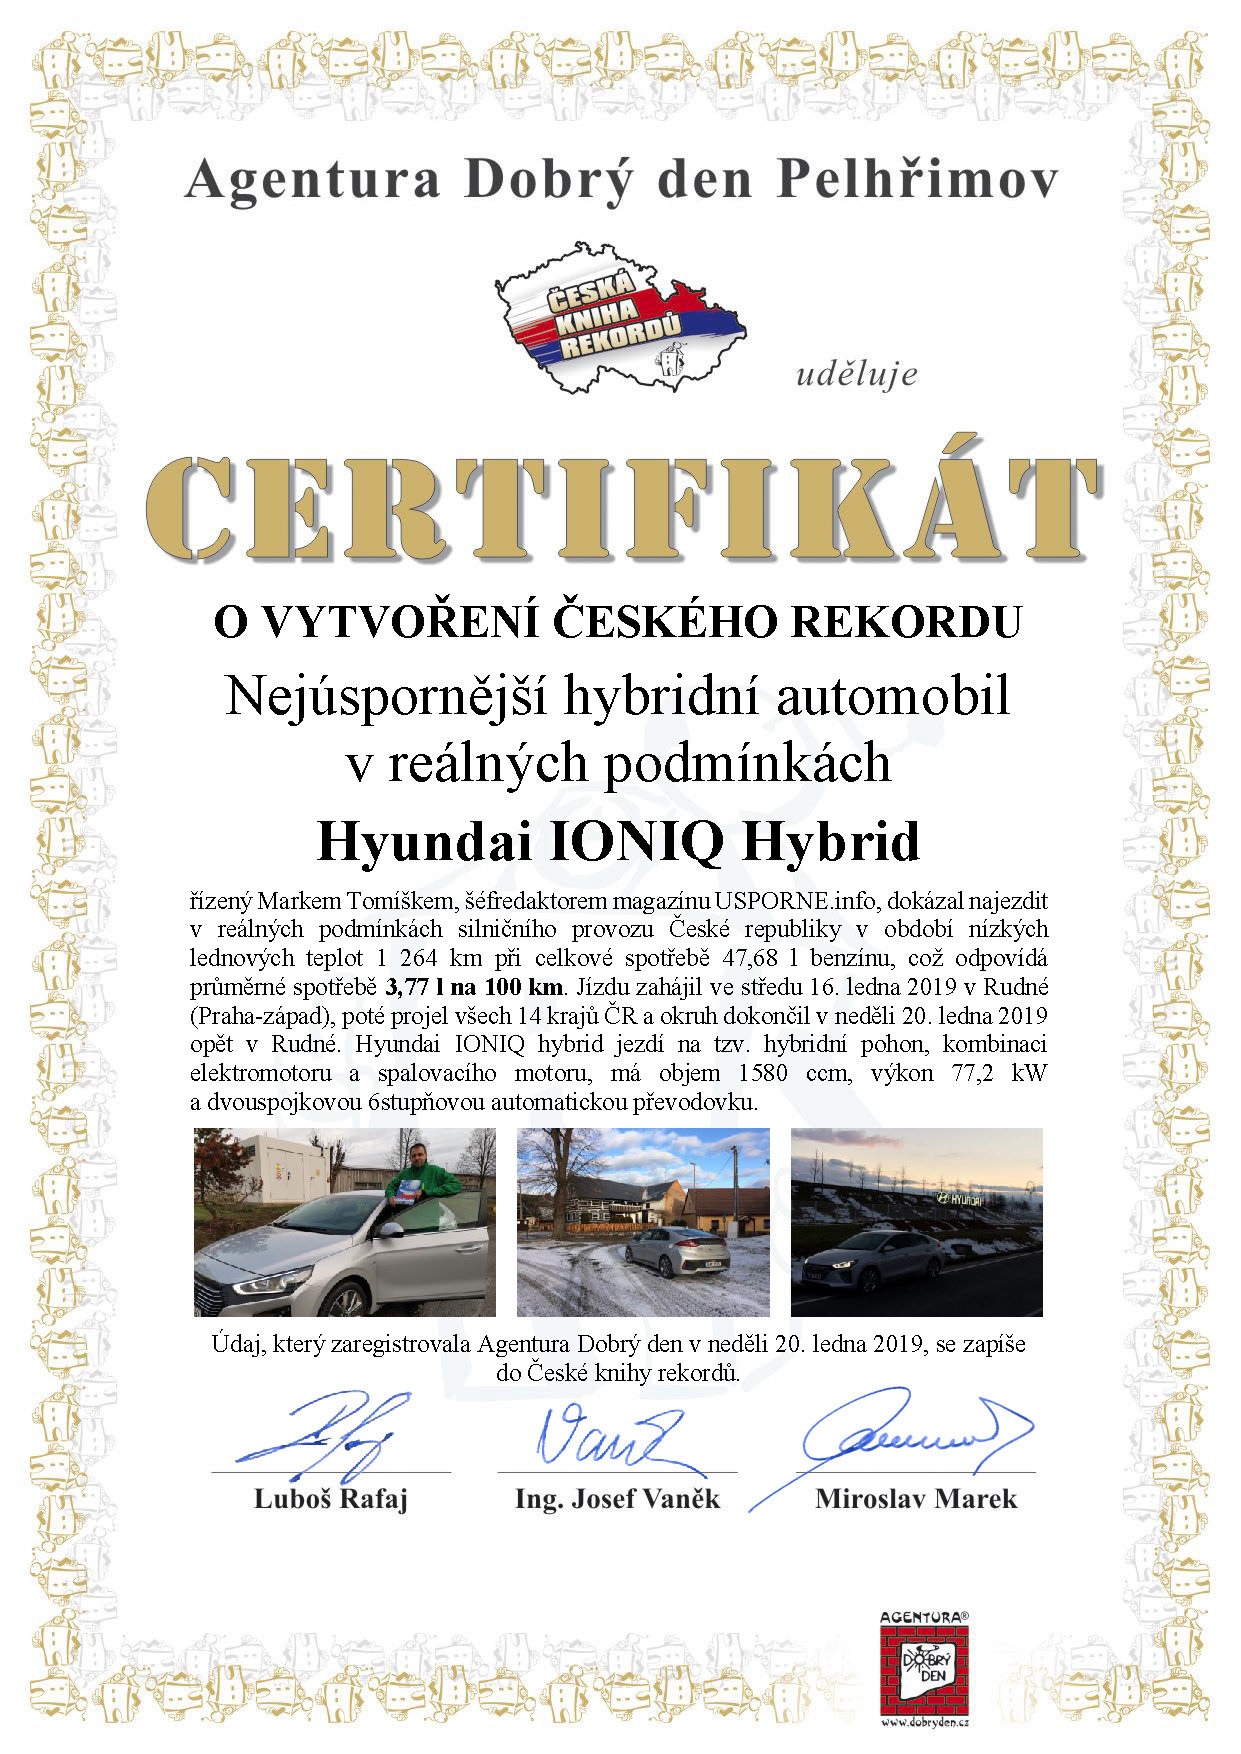 Nejúspornějším hybridním automobilem v reálných podmínkách se stal Hyundai IONIQ Hybrid